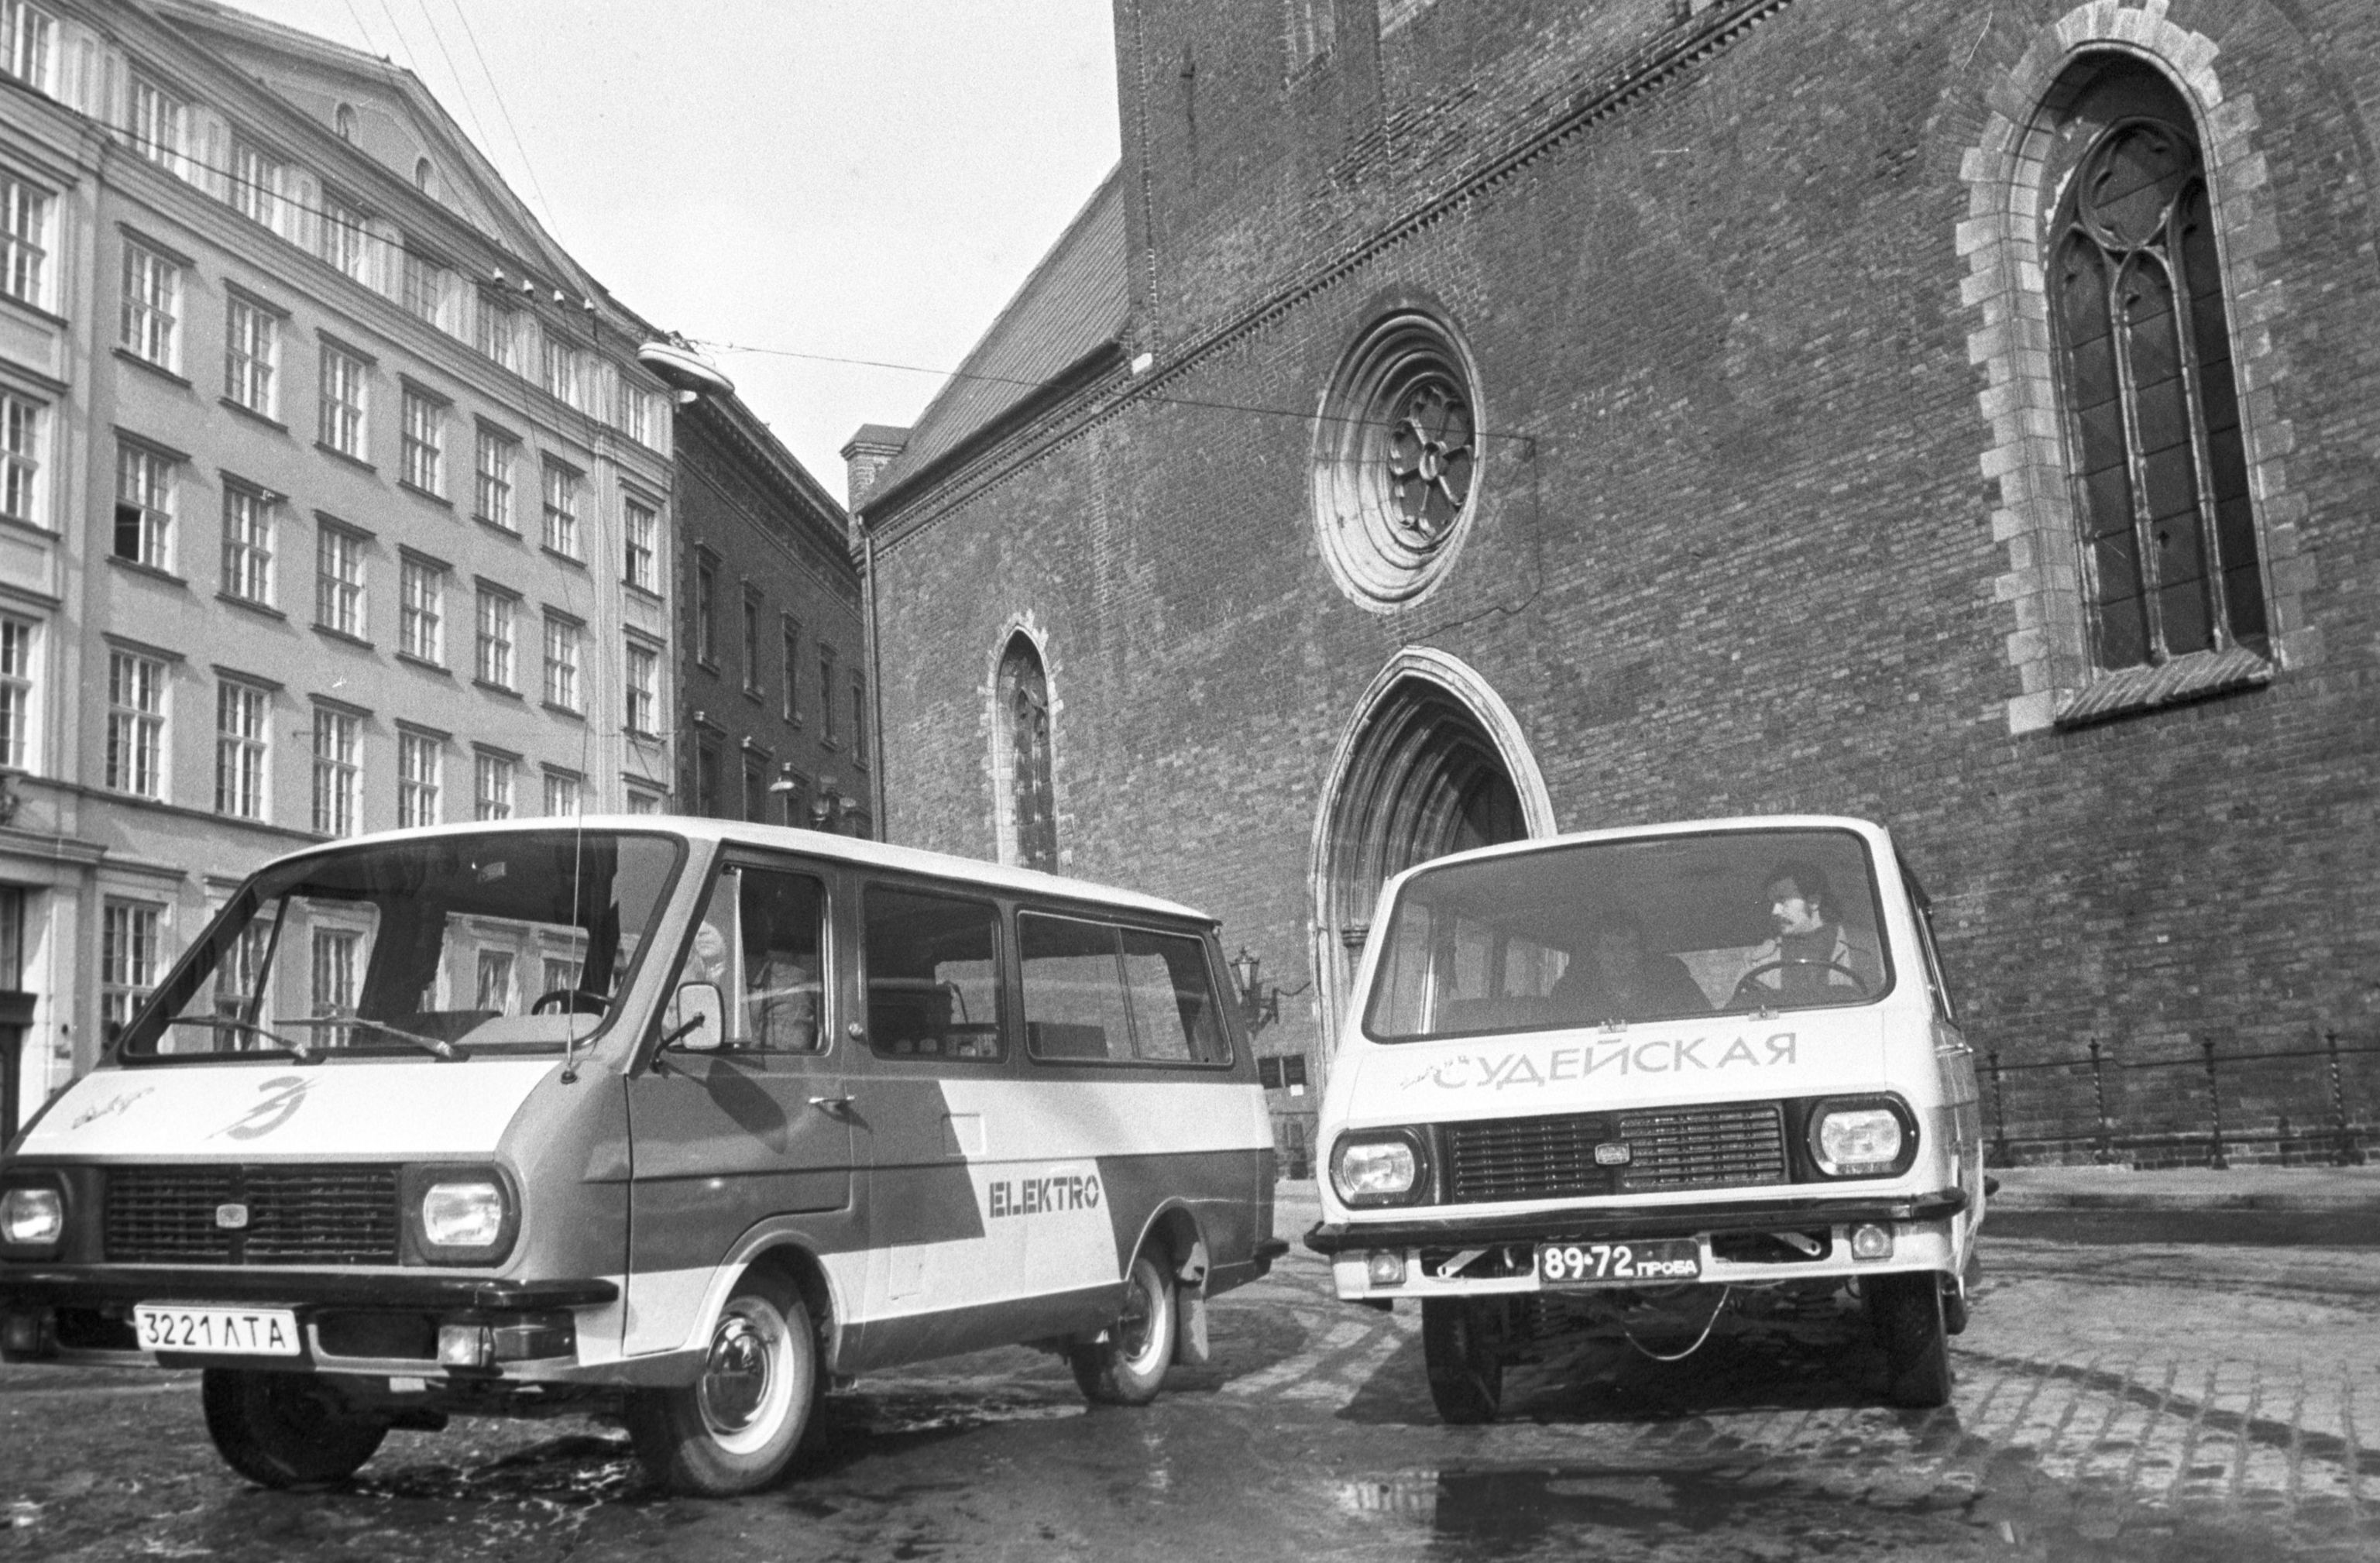 Электромикроавтобус (слева) производства Рижского опытного автобусного завода РАФ ("Ригас Аутобусу Фабрику" (Rigas Autobusu Fabriku, RAF) на улице столицы Латвийская ССР.